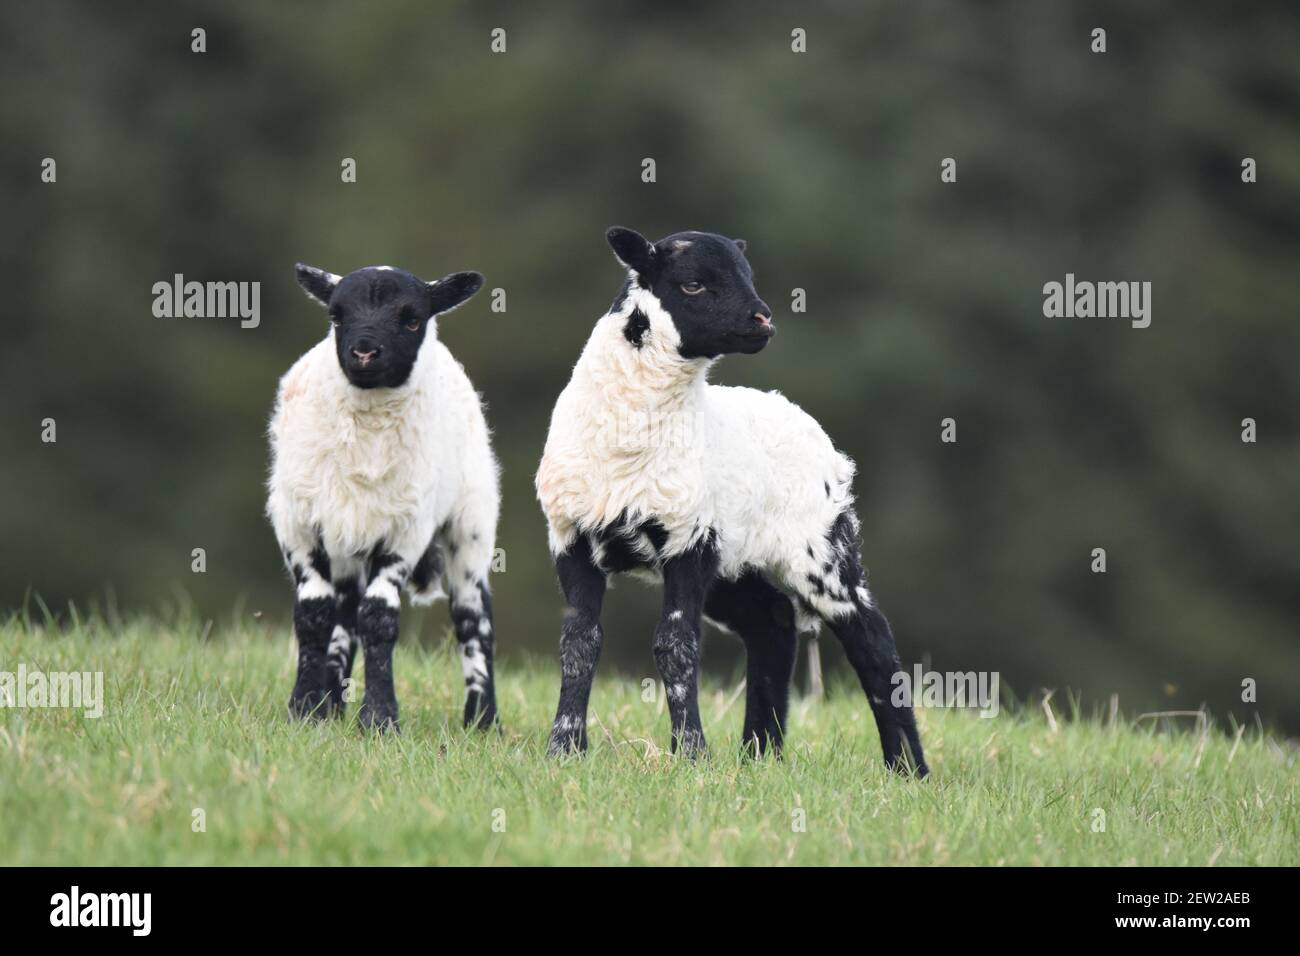 Twin Lambs – mouton écossais Blackface Banque D'Images